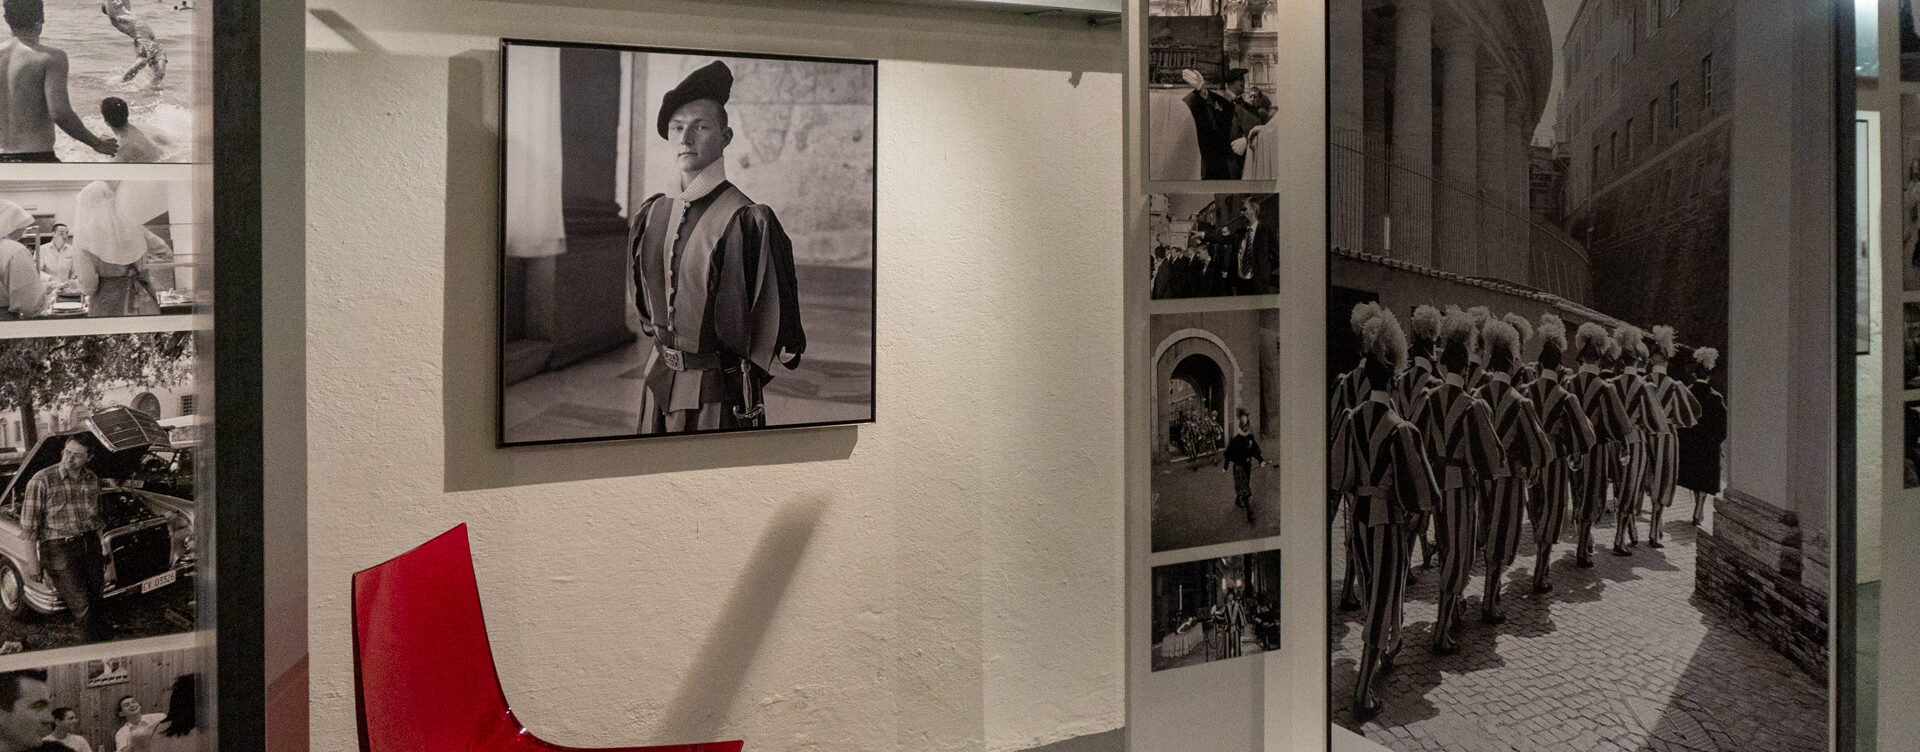 Le Musée de la Garde suisse dans la forteresse militaire de Naters (VS) offre un aperçu de la vie des jeunes soldats du Vatican | © Maurice Page